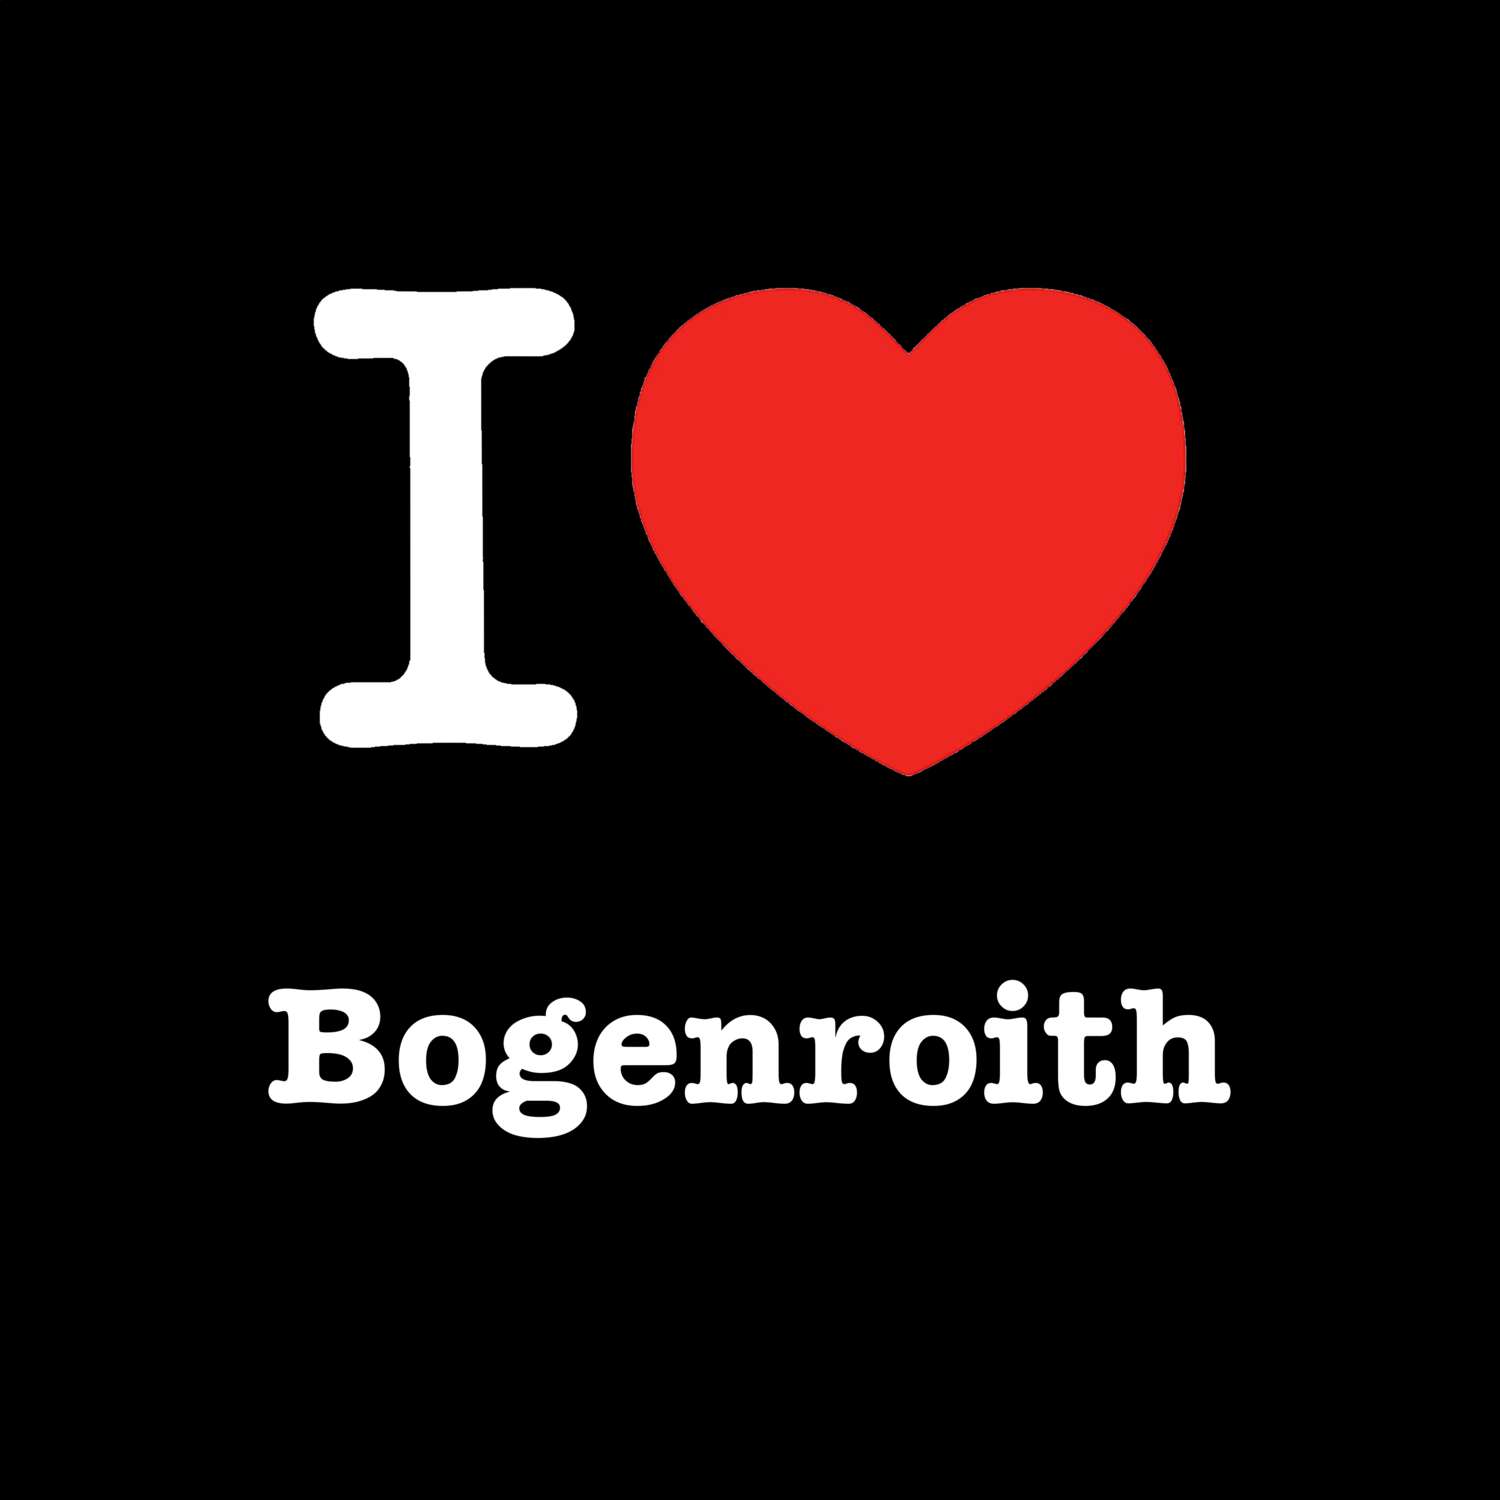 Bogenroith T-Shirt »I love«